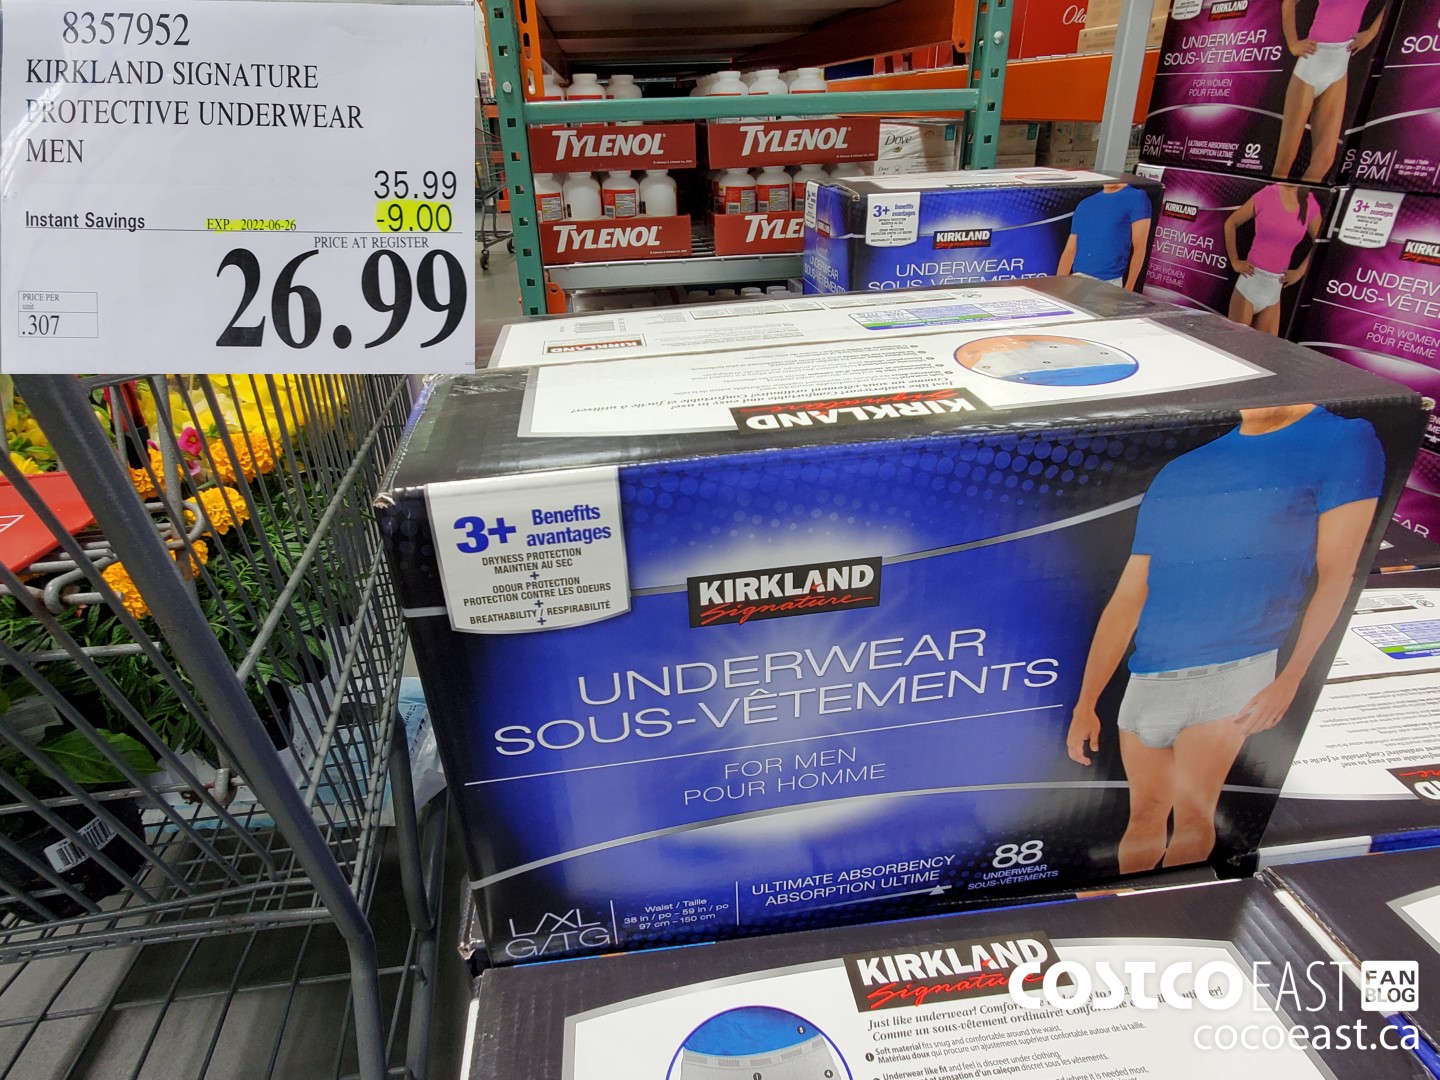 Costco Free Kirkland Signature Protective Dri-Fit Underwear Sample for Men  or Women – Canada